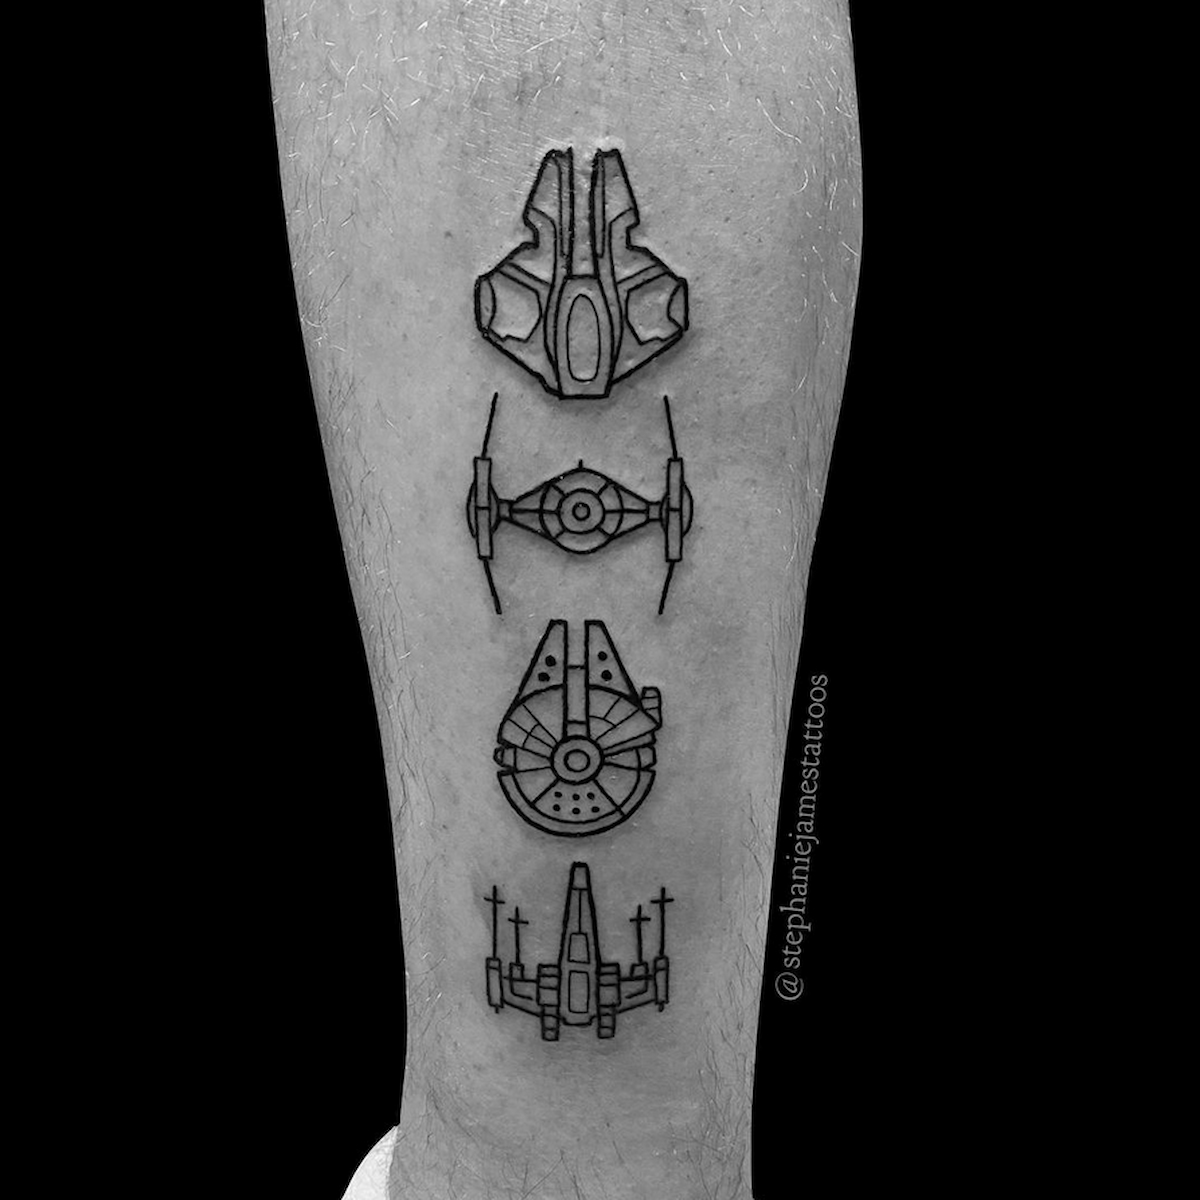 Tattoo tagged with dots star wars  inkedappcom